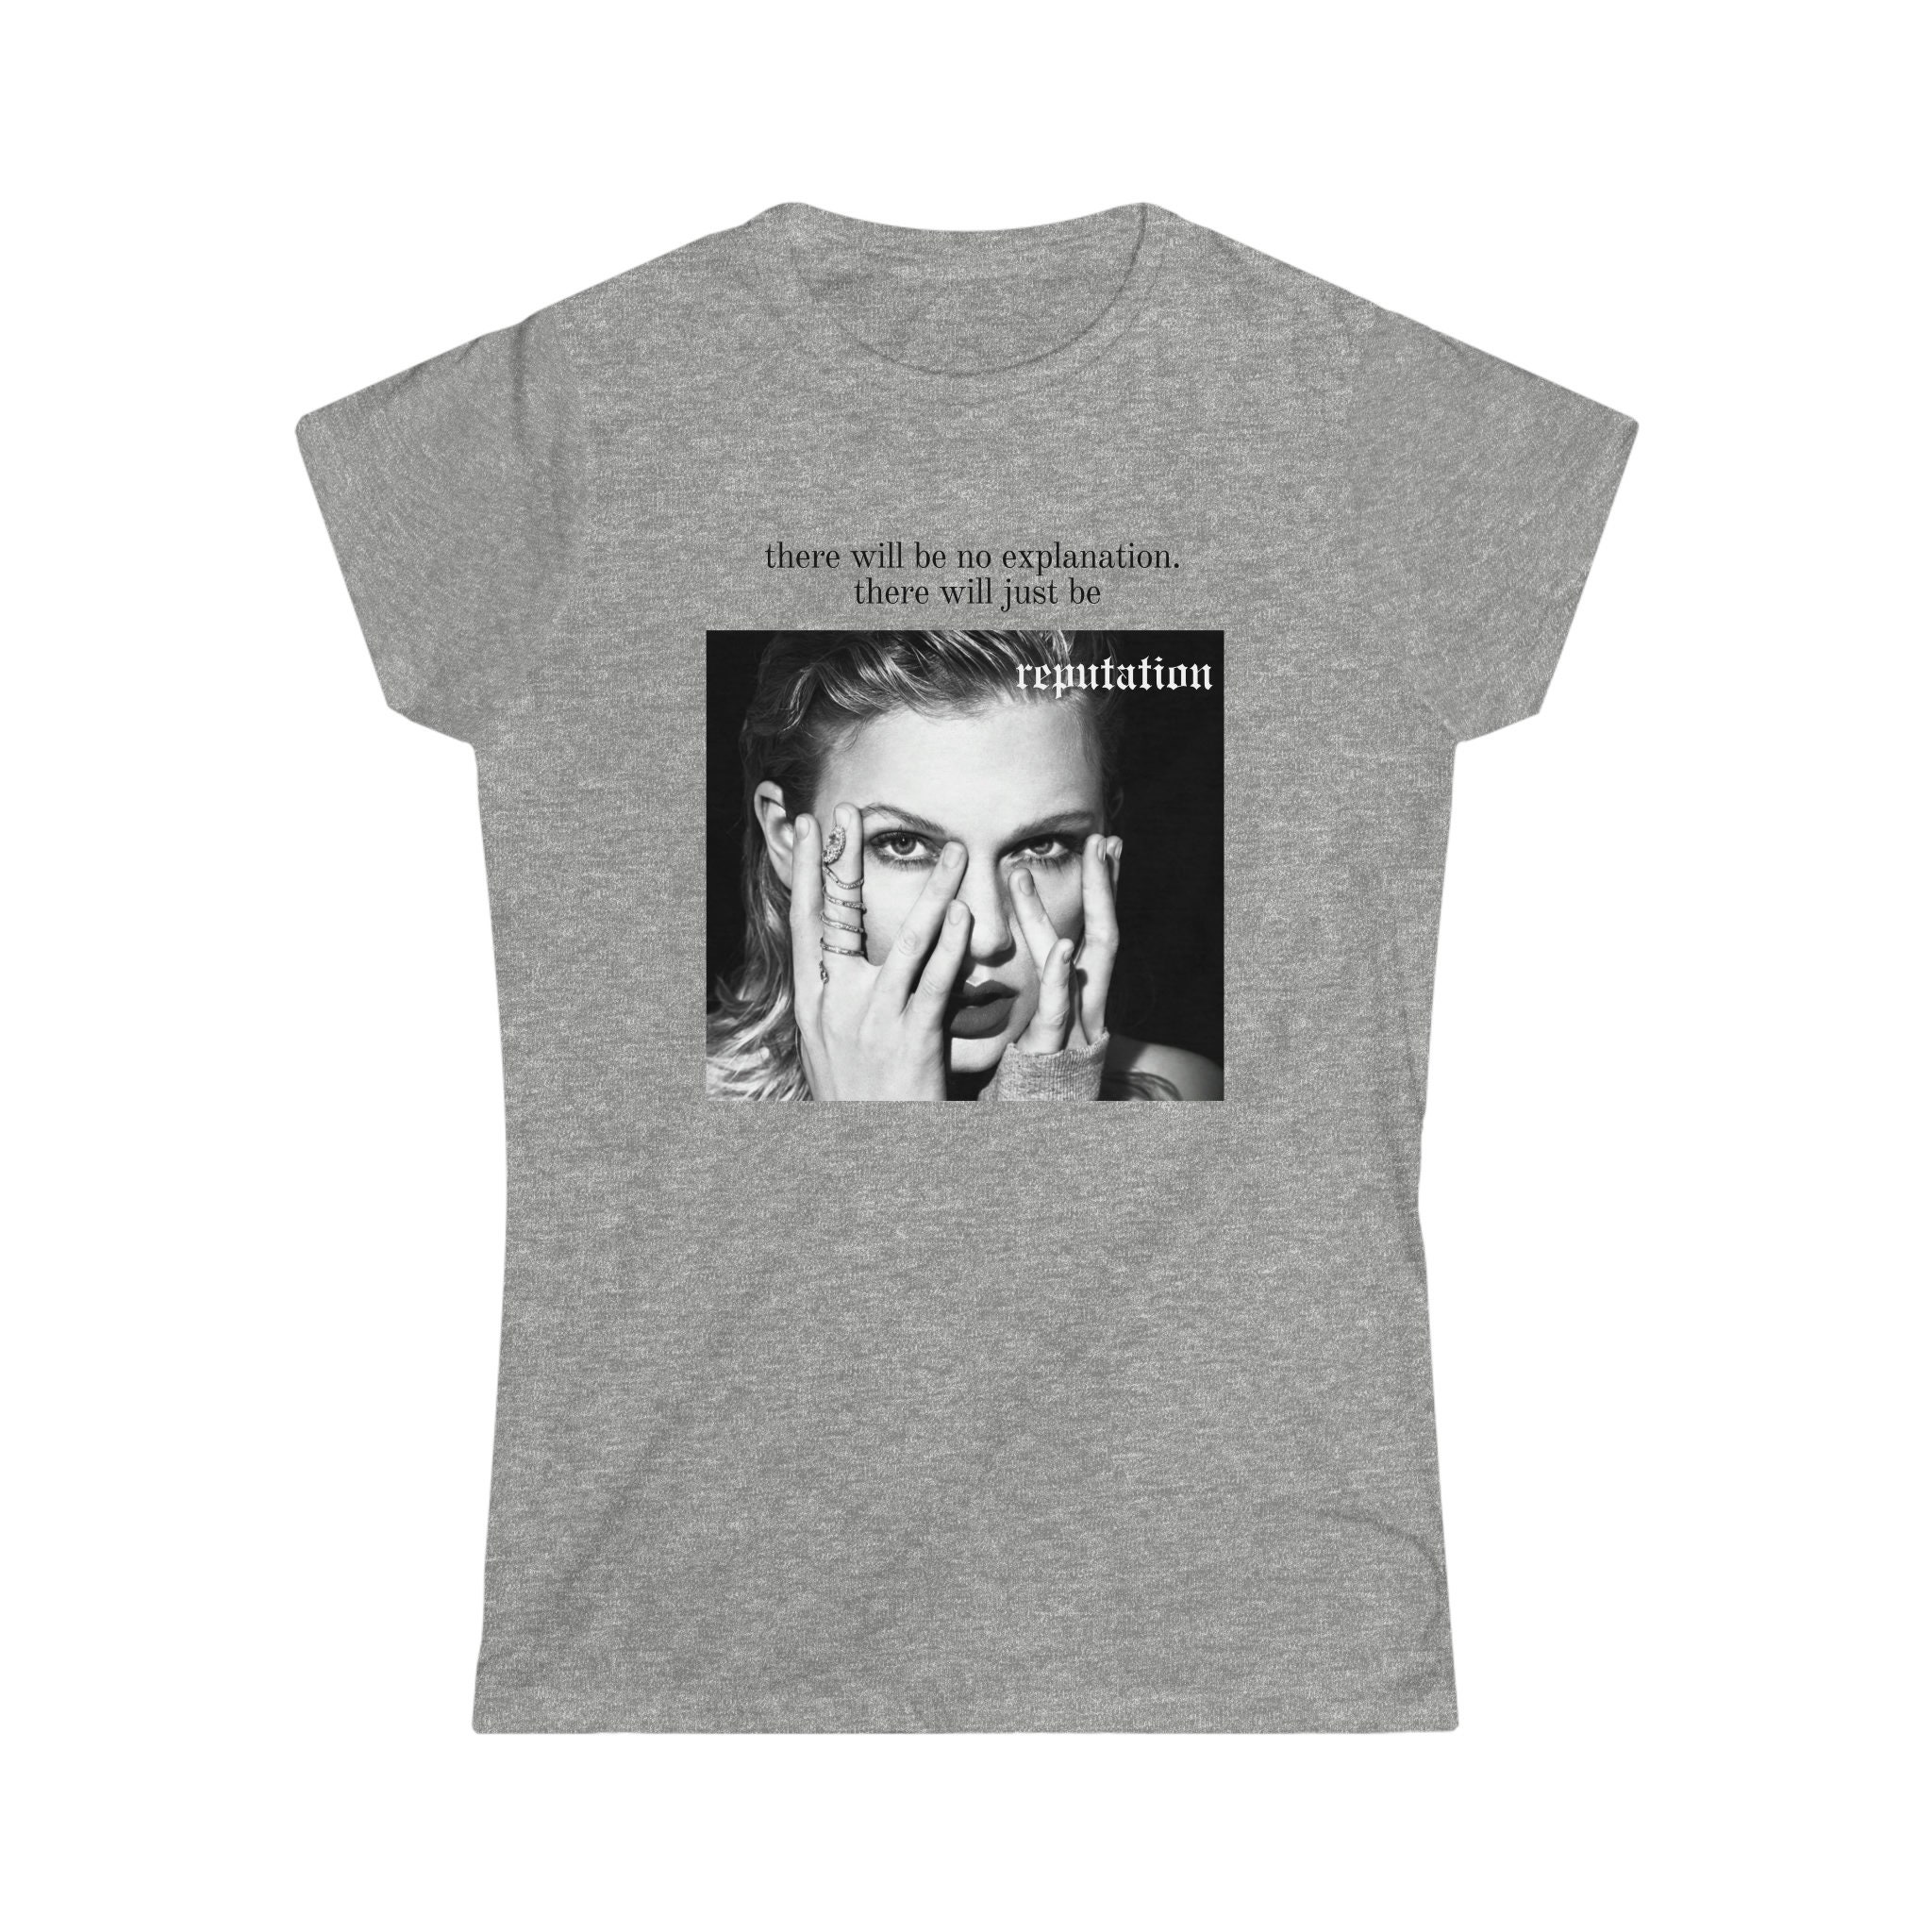 A la venta las camisetas del videoclip de Taylor Swift